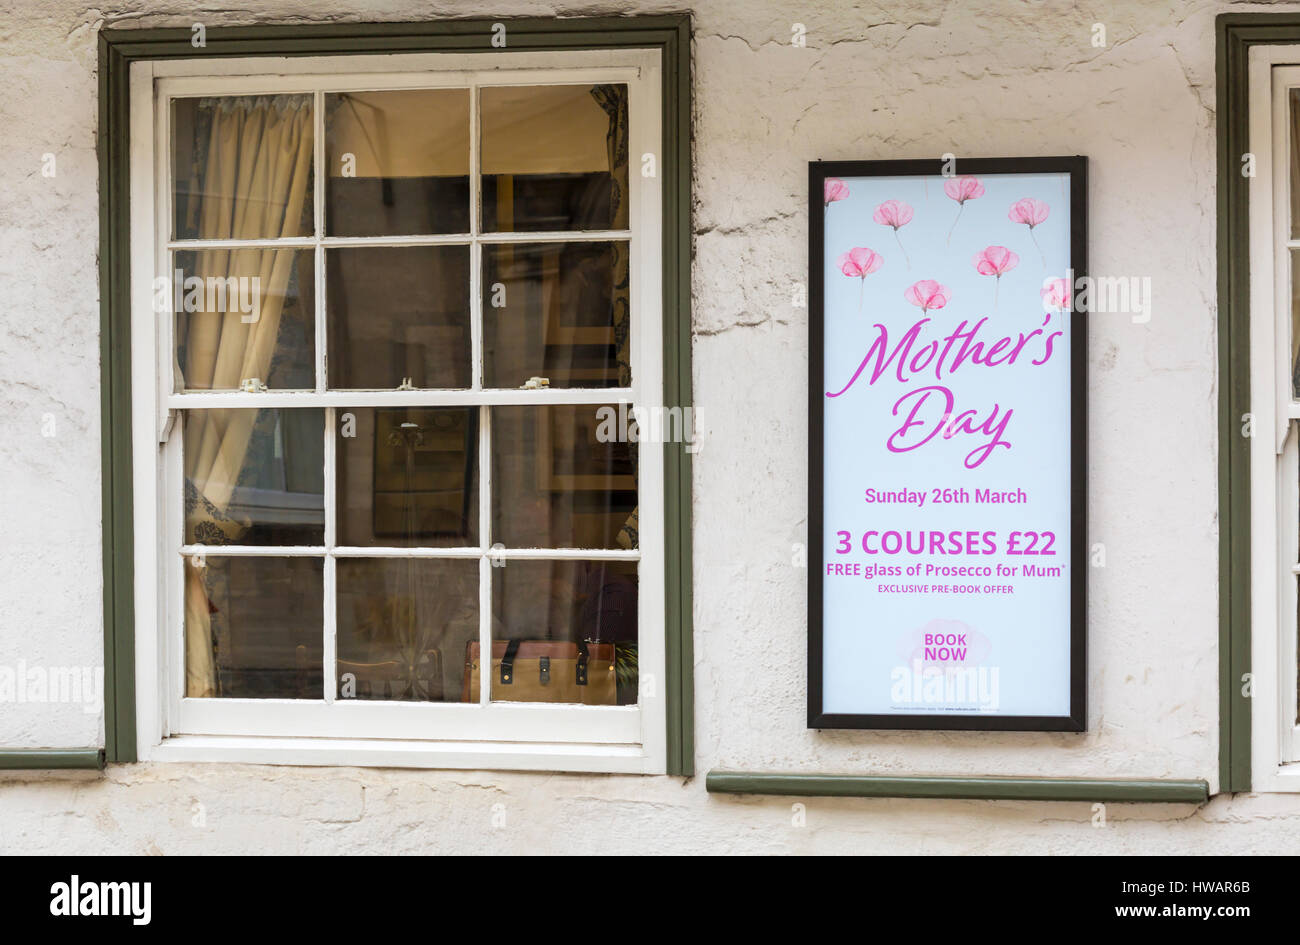 Repas de la fête des mères le dimanche 26 mars avec verre de Prosecco gratuit pour maman - panneau sur le mur de l'auberge Bear à Cirencester, Gloucestershire Royaume-Uni Banque D'Images